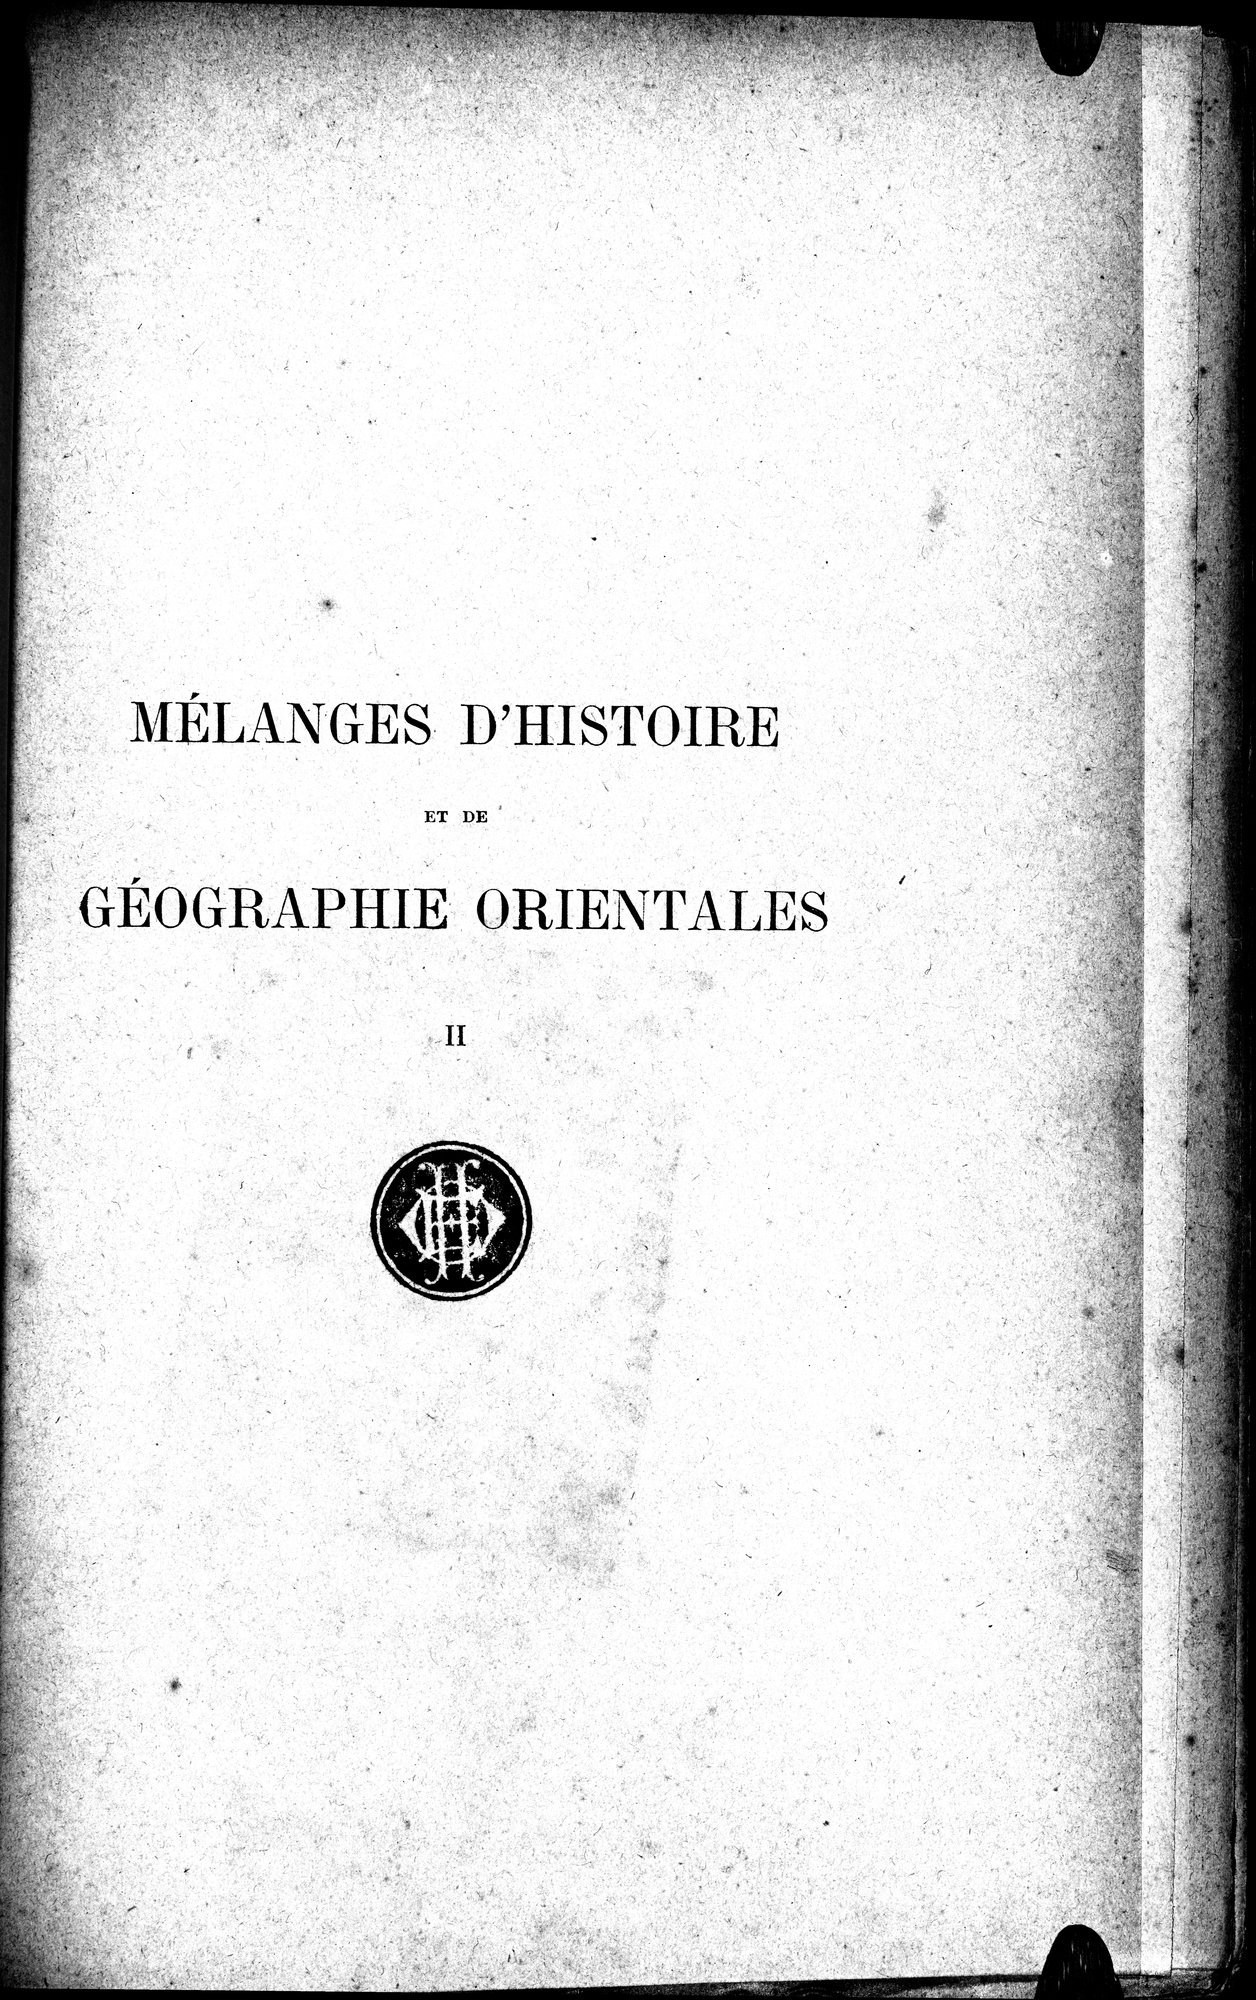 Mélanges d'Histoire et de Géographie Orientales : vol.2 / Page 5 (Grayscale High Resolution Image)